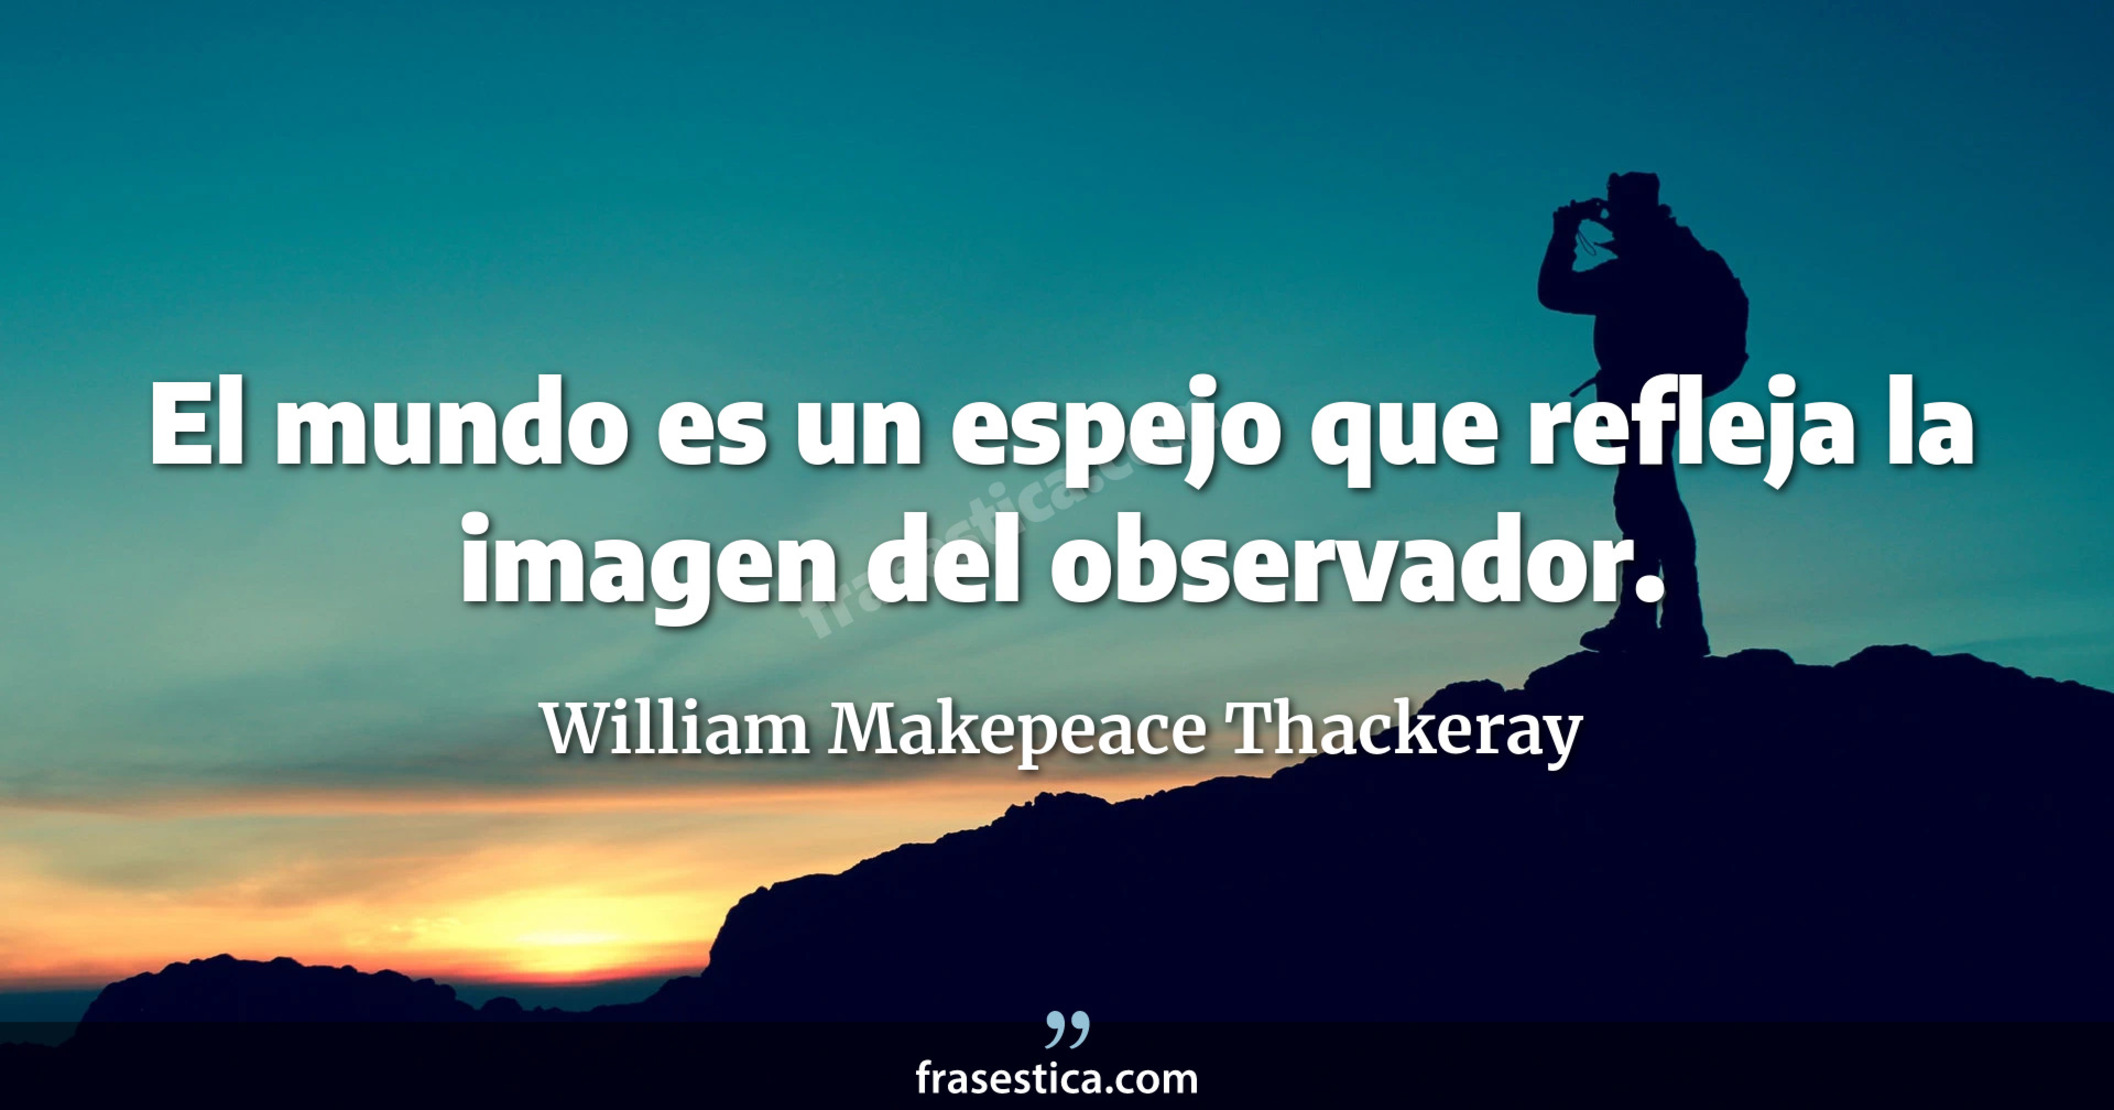 El mundo es un espejo que refleja la imagen del observador. - William Makepeace Thackeray